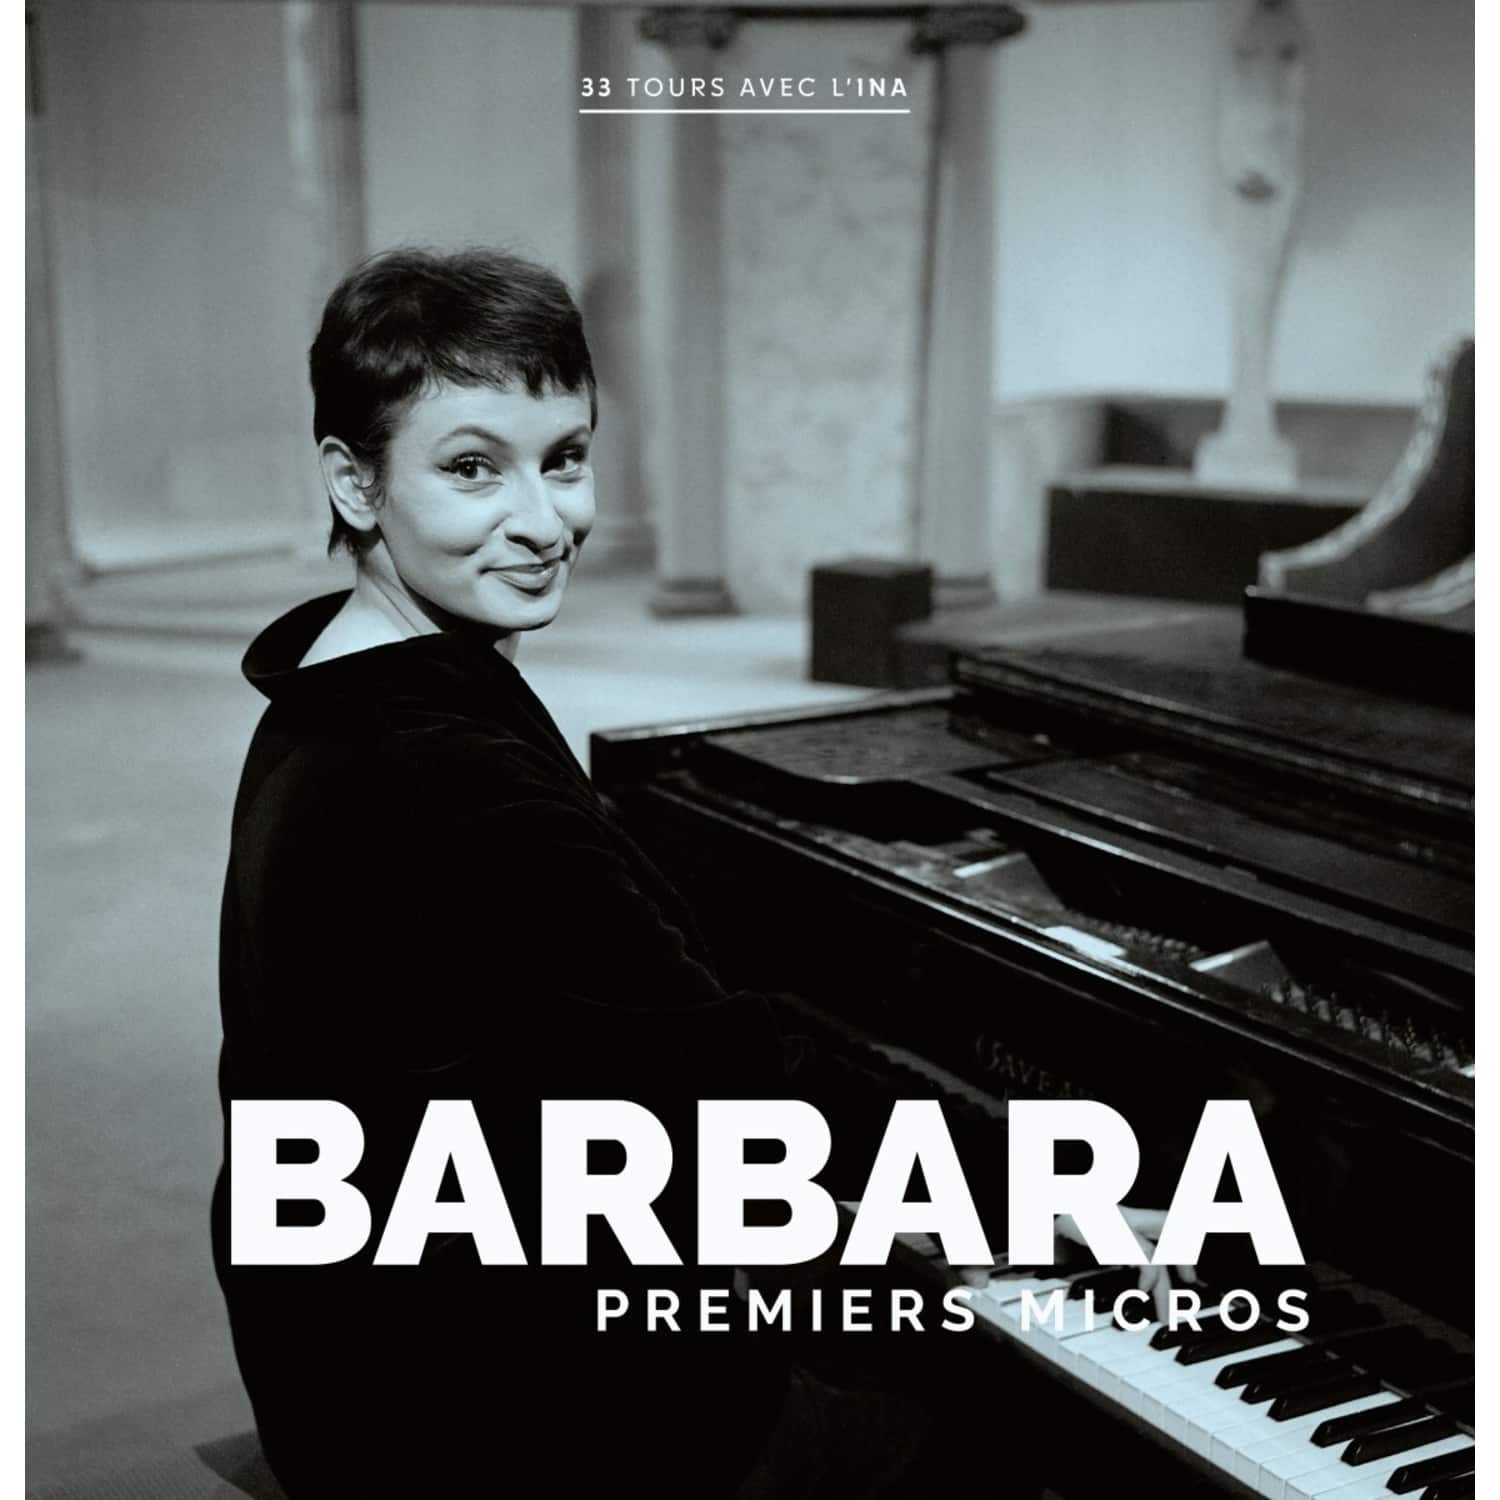 Barbara - PREMIERS MICROS 